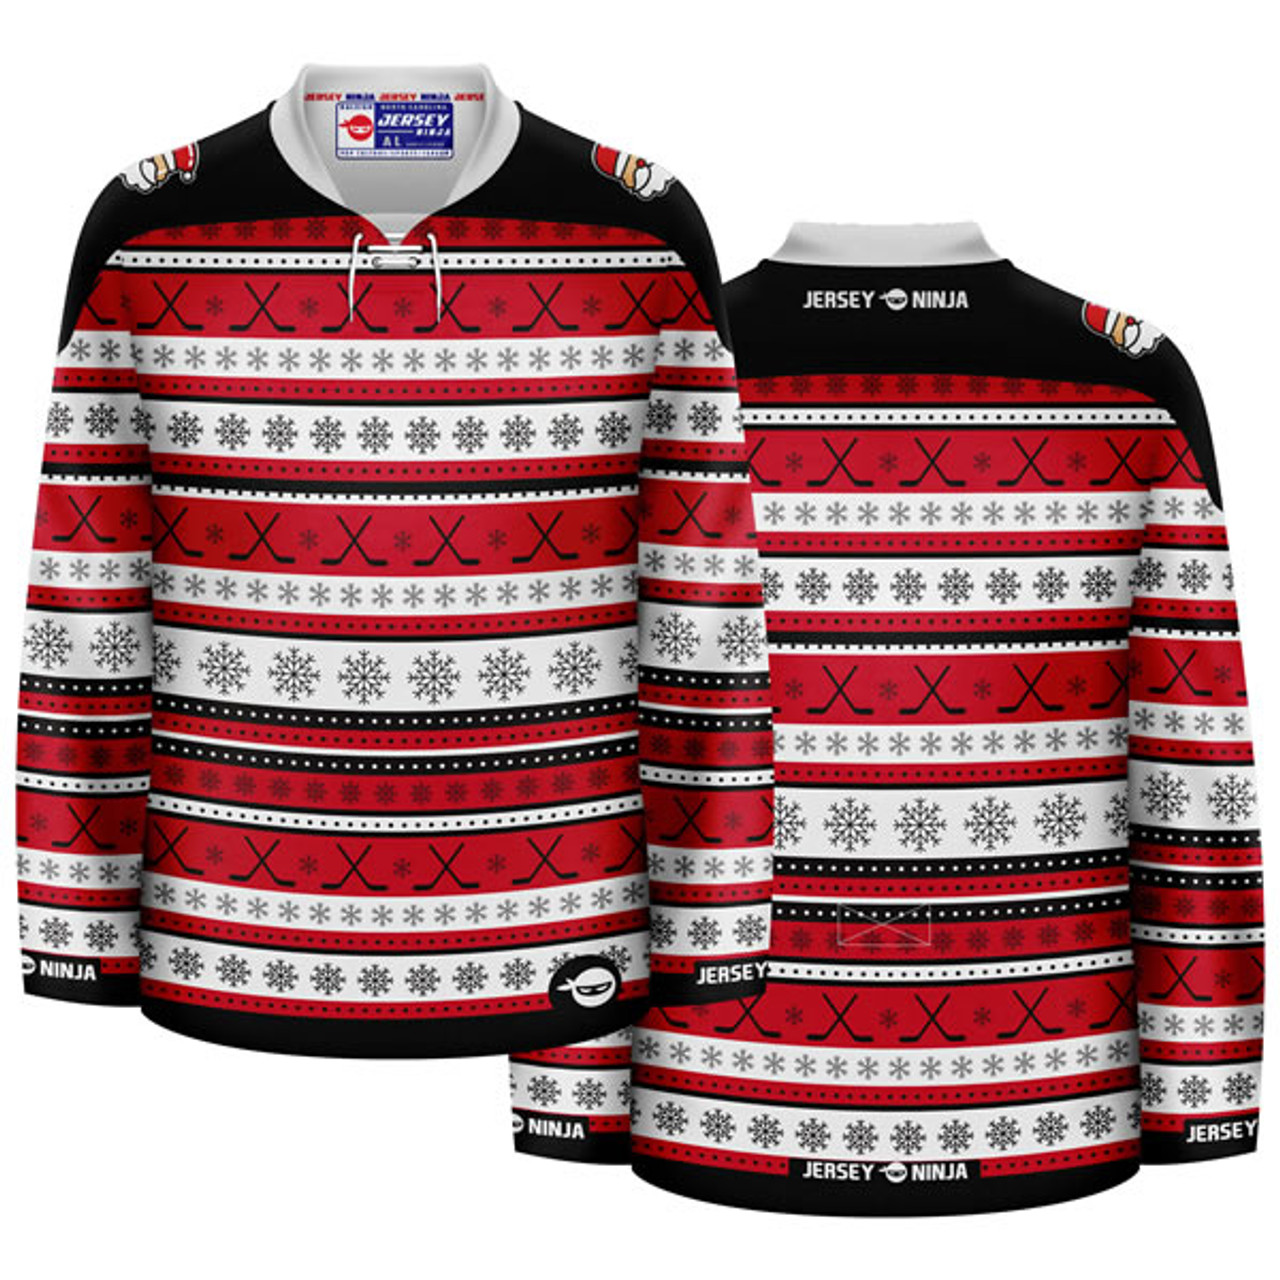 NHL Jerseys, Hockey Jersey Deals, NHL Breakaway Jerseys, NHL Hockey Sweater